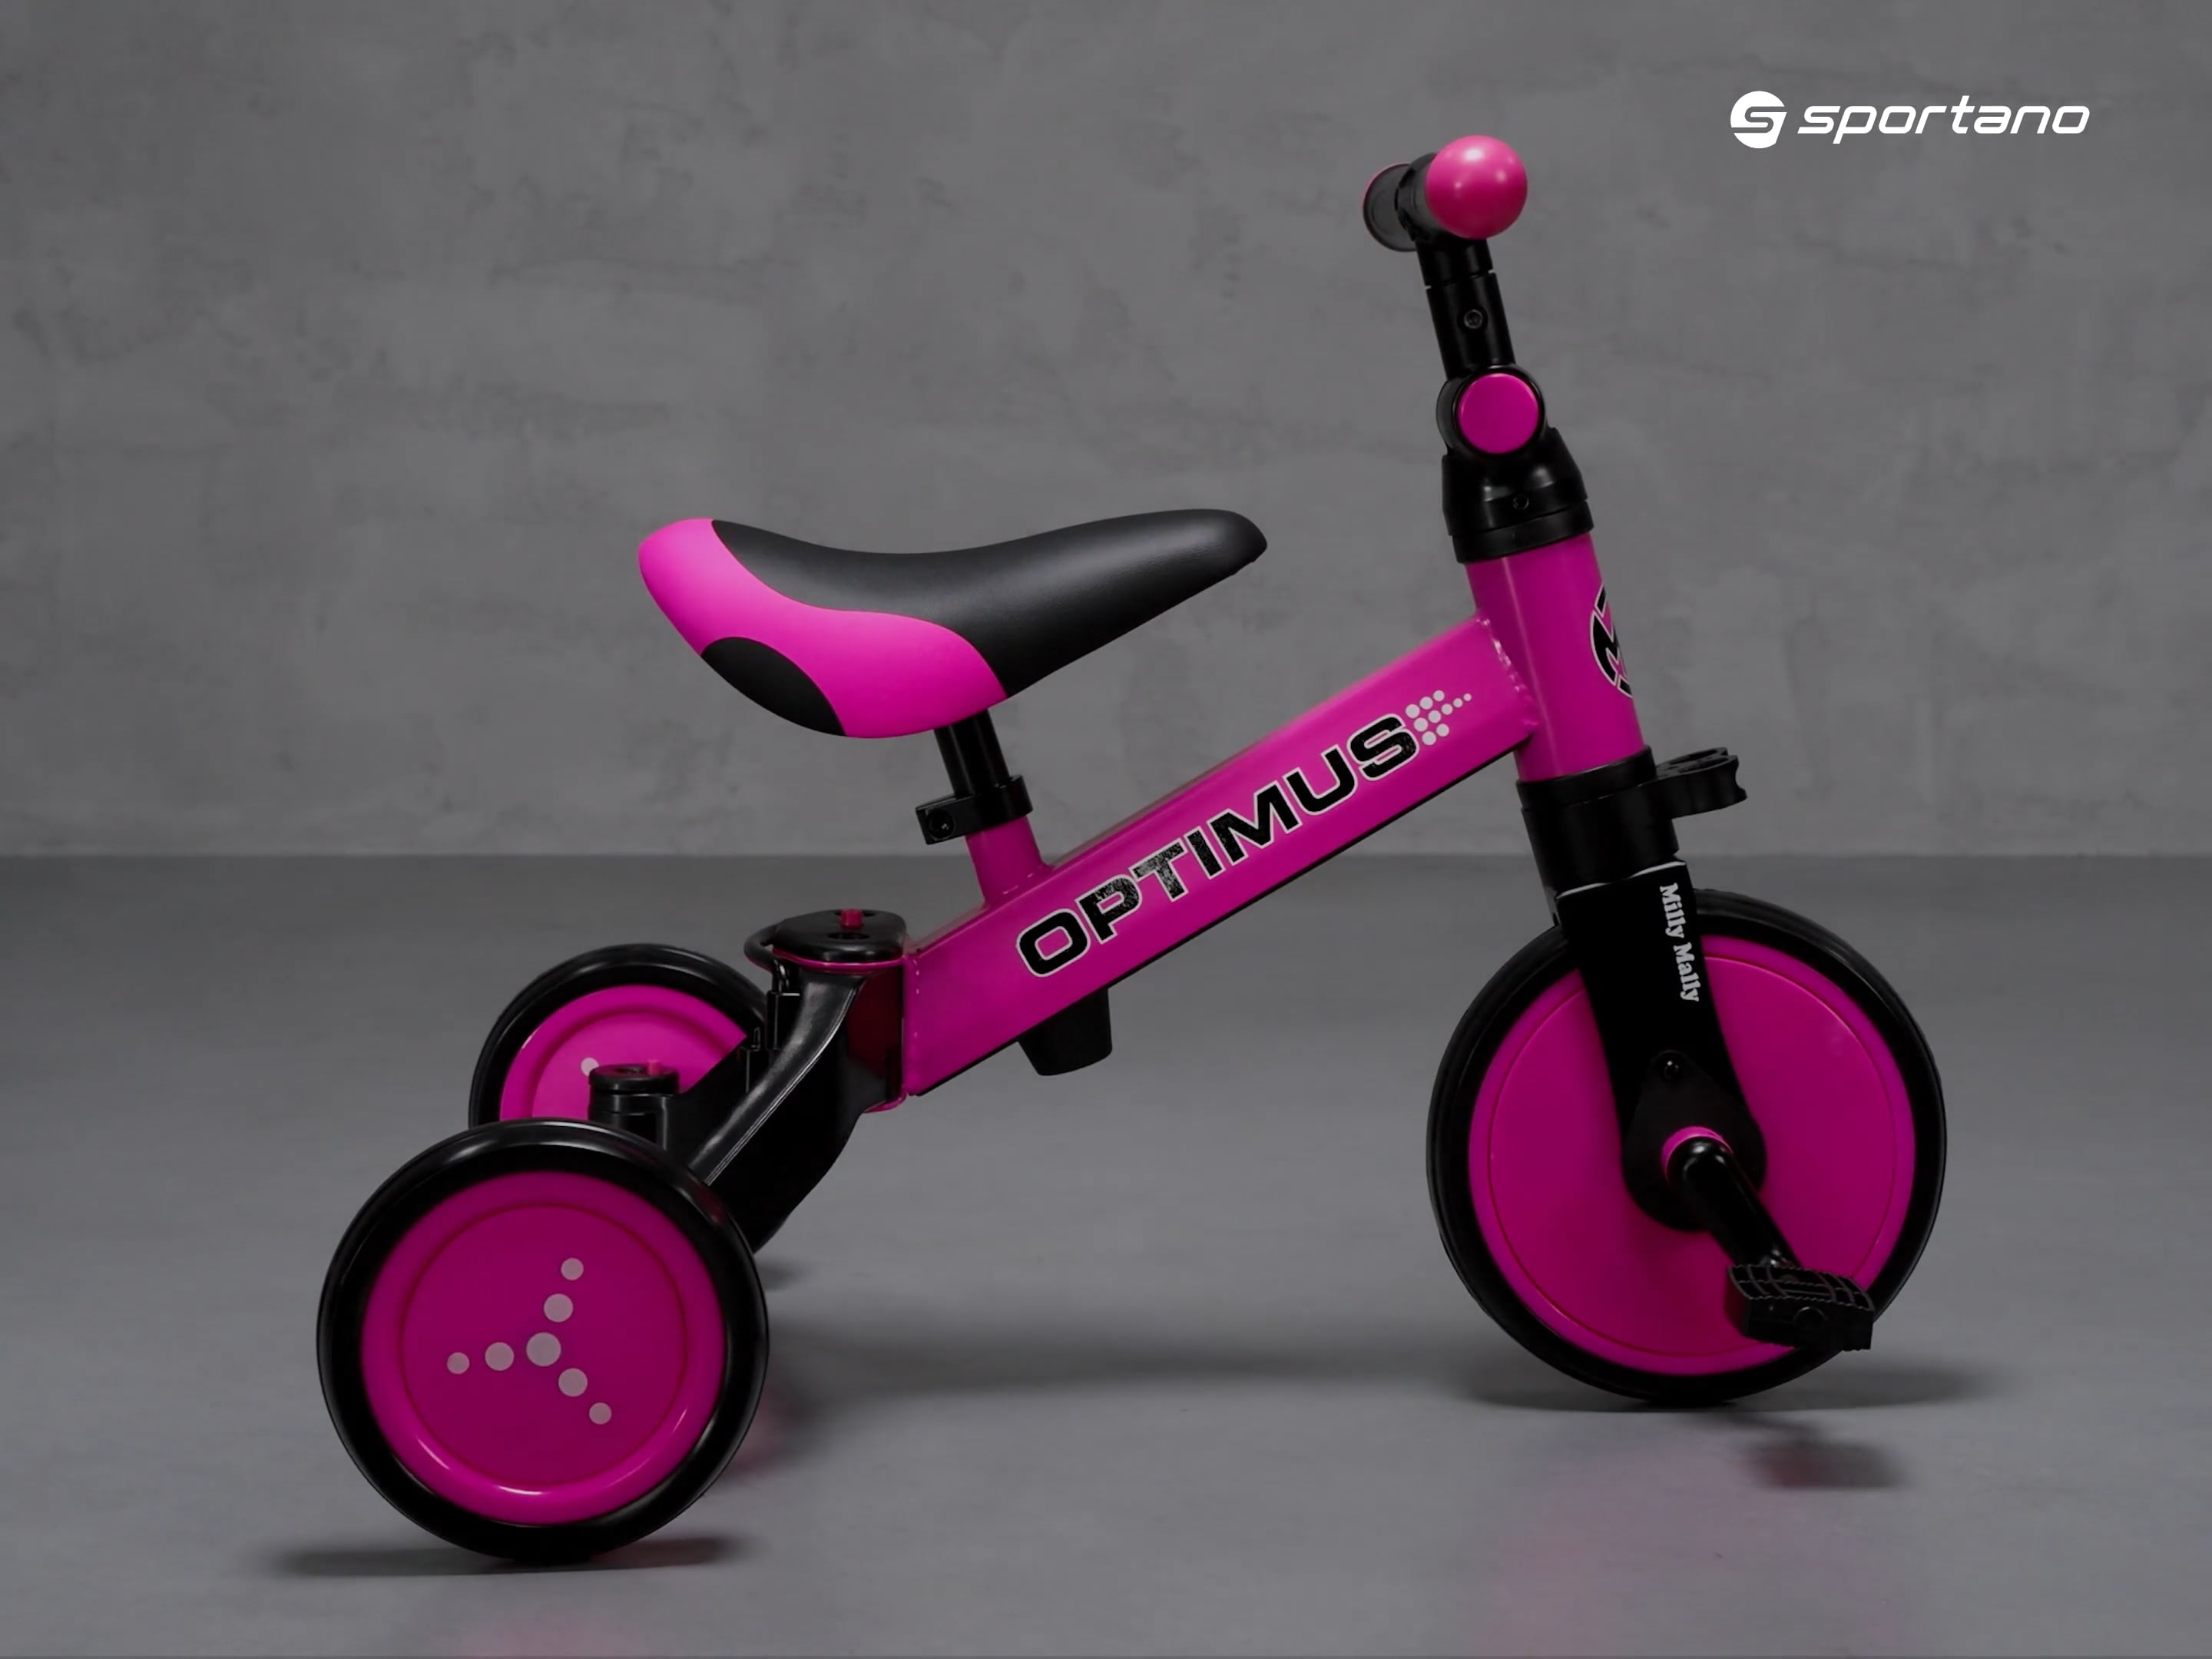 Milly Mally 3in1 Optimus pedálos kerékpár rózsaszín/fekete 2711